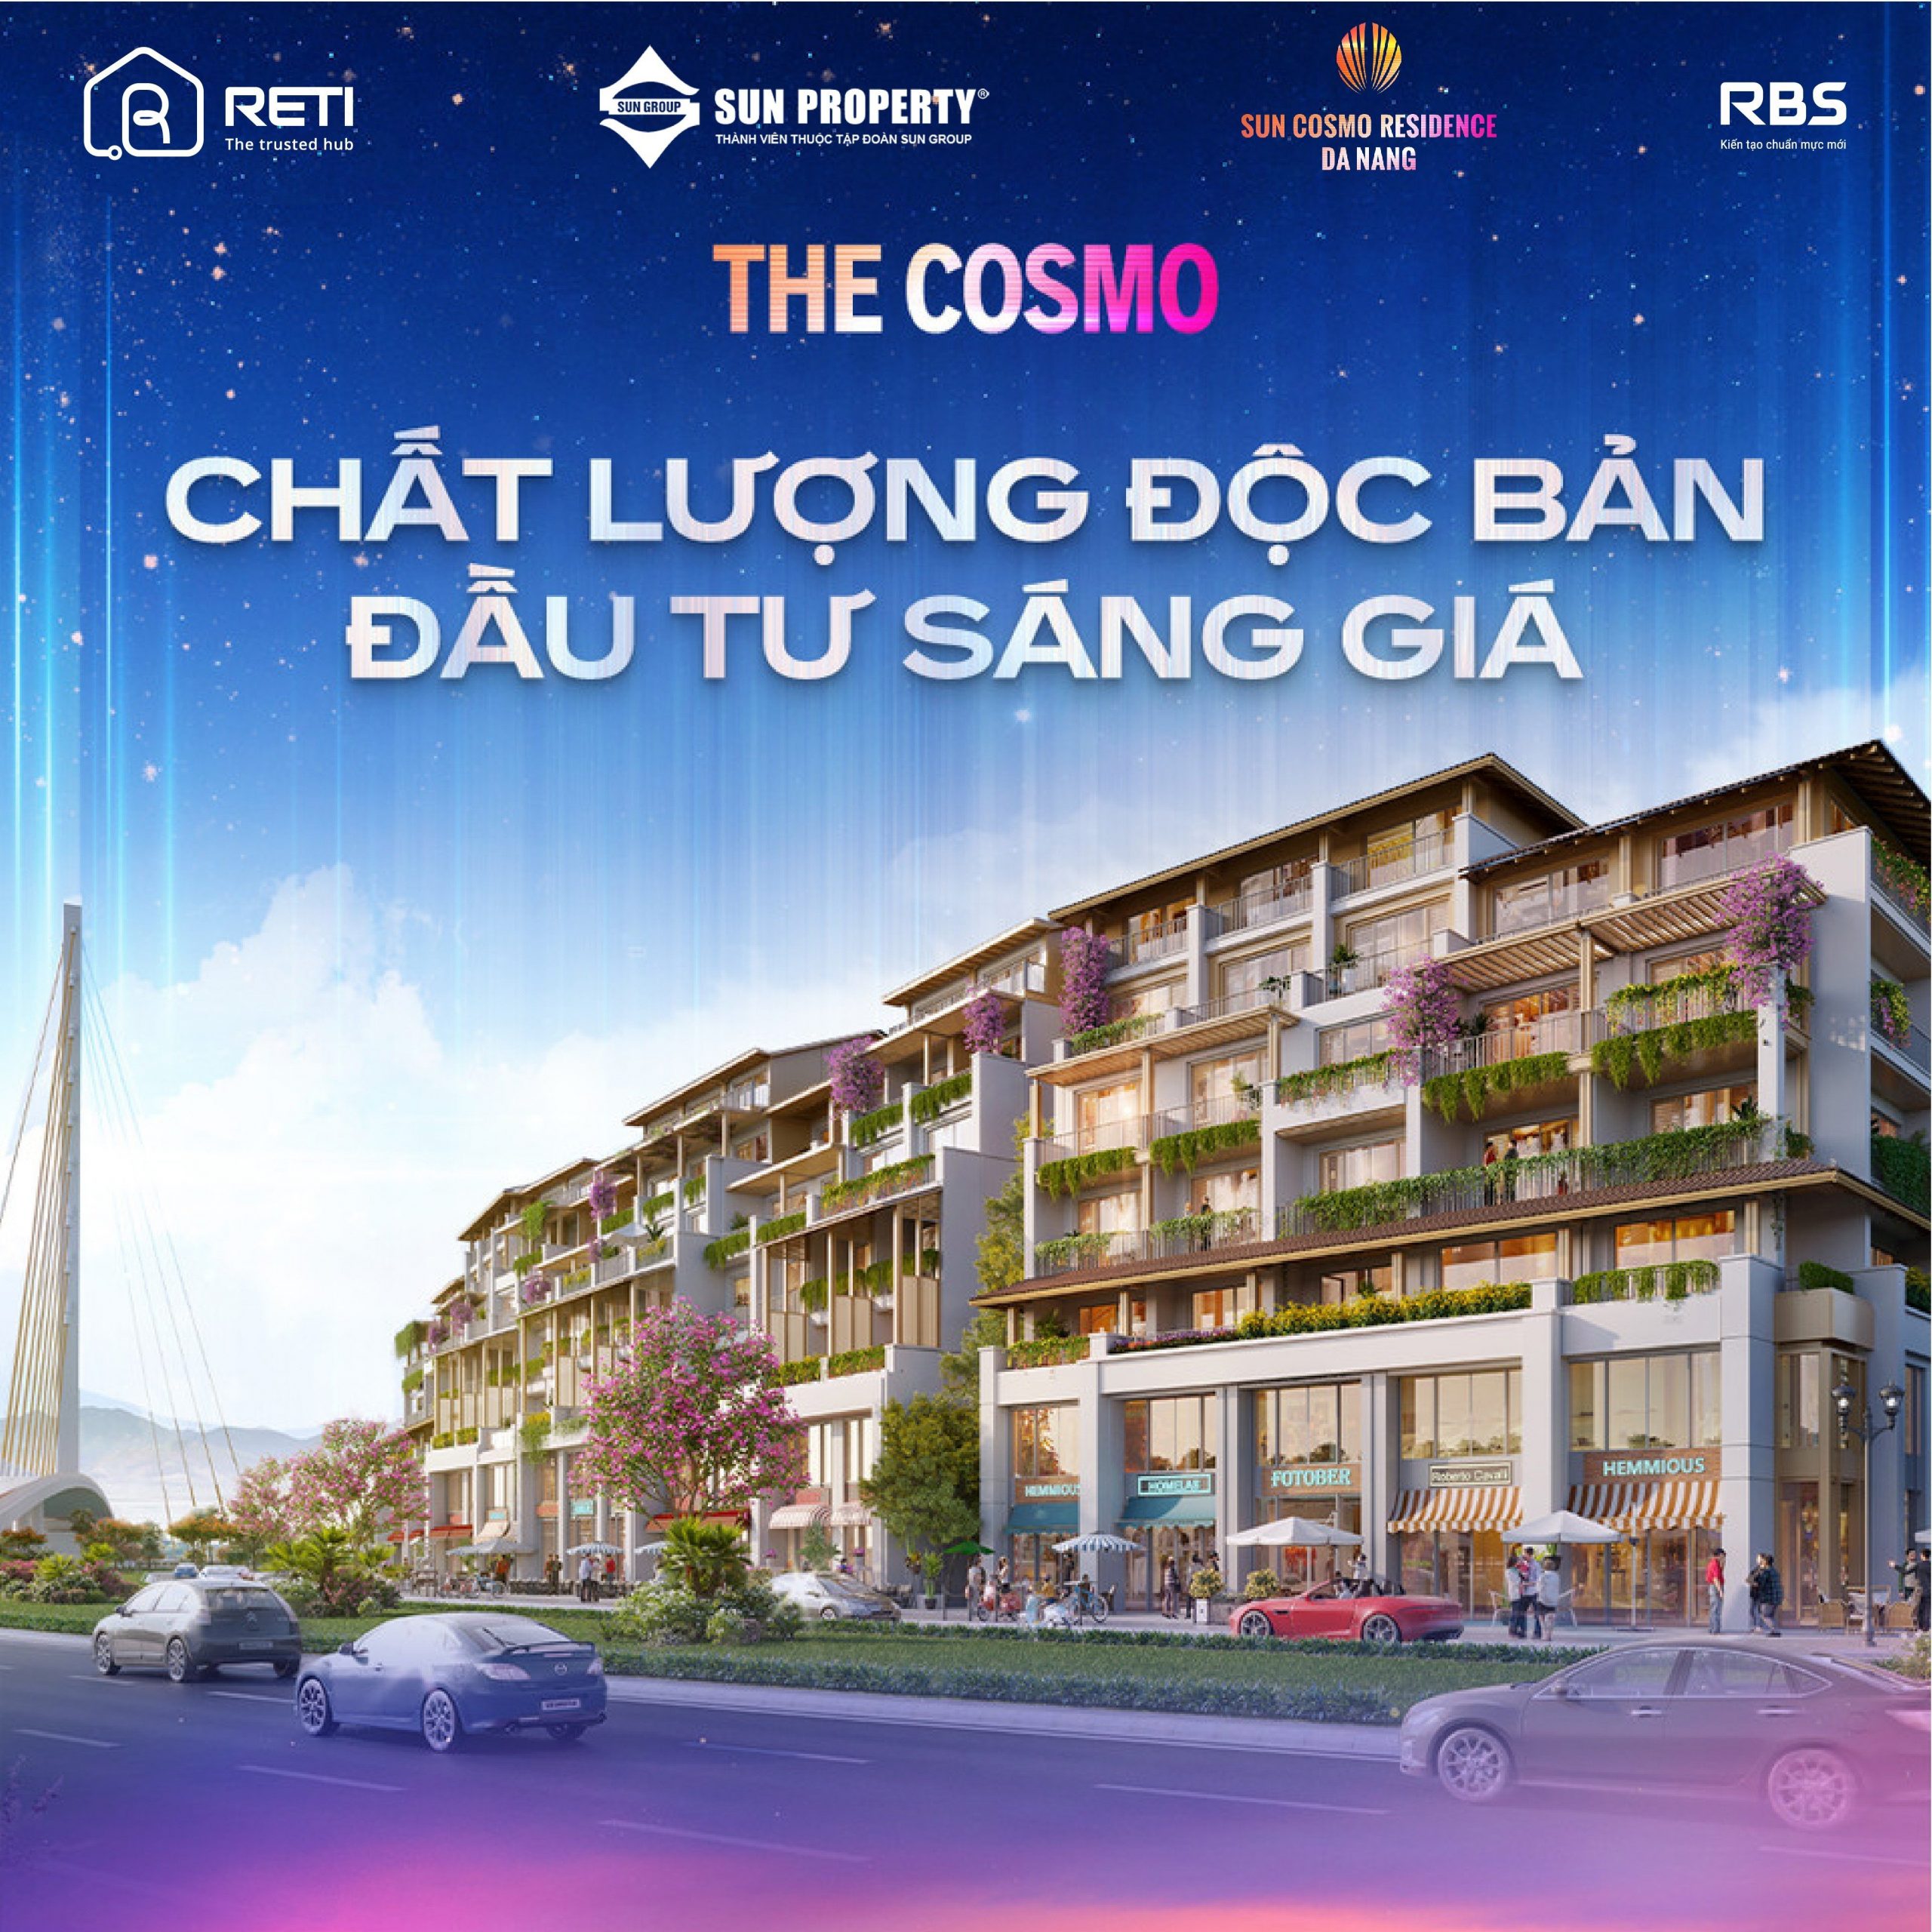 Sun Cosmo Residence Da Nang - Lựa chọn lý tưởng cho nhà đầu tư mong muốn tăng giá trị bất động sản 4